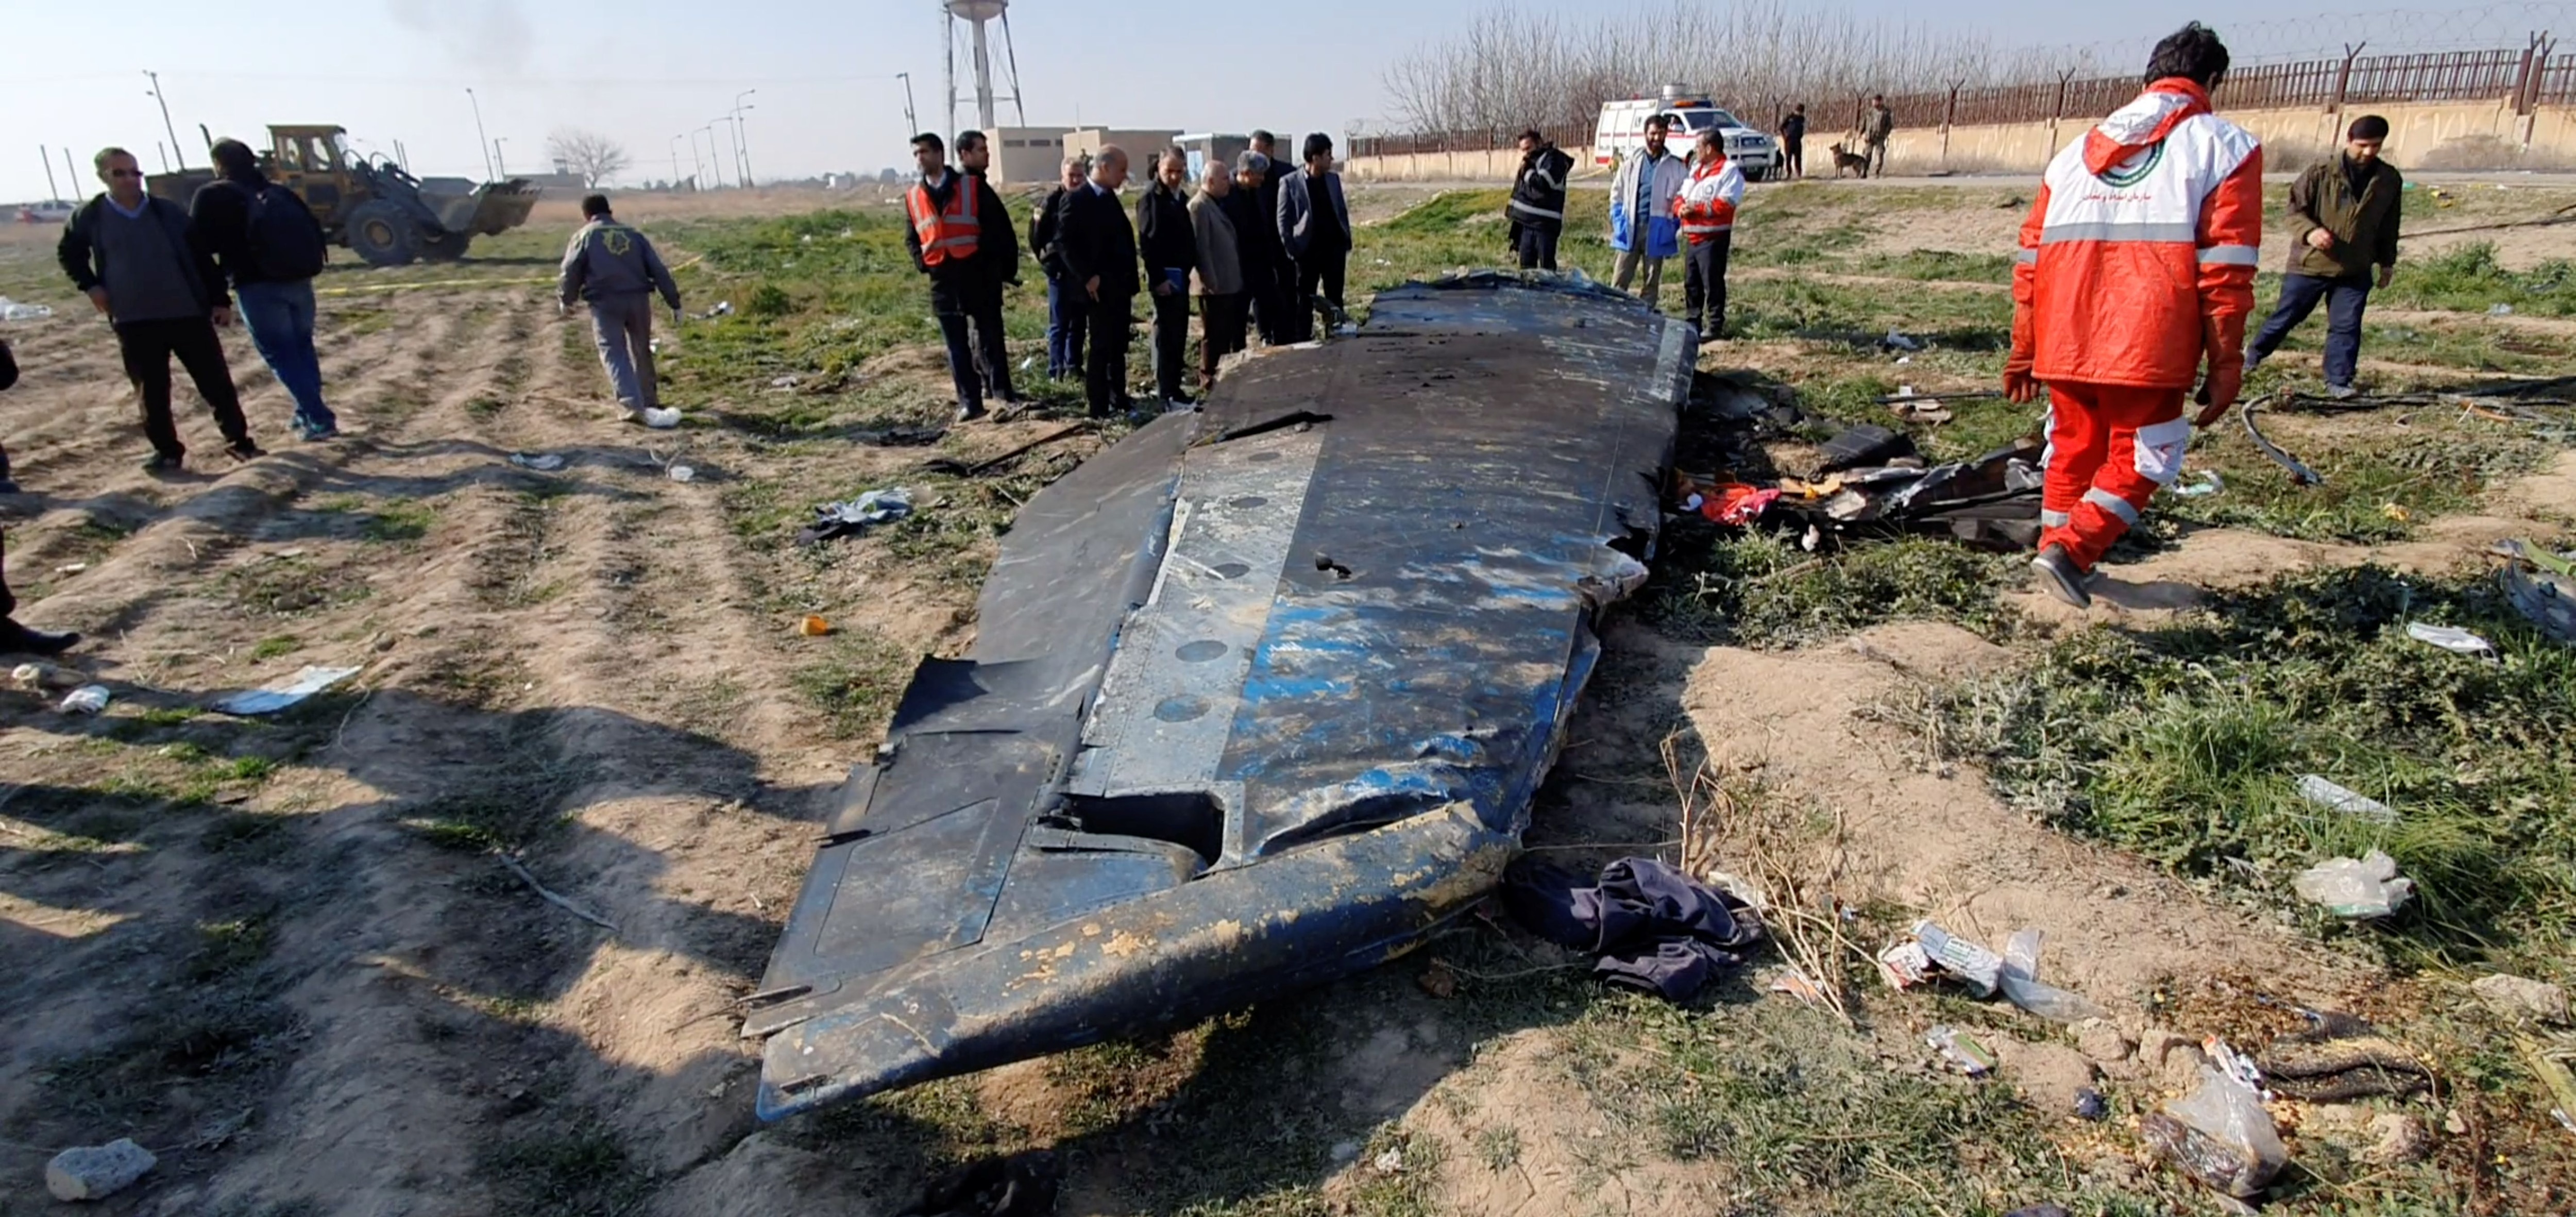 Vista general de los escombros del avión de Ukraine International Airlines, vuelo PS752, Boeing 737-800 que se estrelló después de despegar del aeropuerto Imam Jomeini de Irán, en las afueras de Teherán, Irán 8 de enero, 2020 se ve en esta captura de pantalla obtenida de un vídeo de redes sociales (via REUTERS)